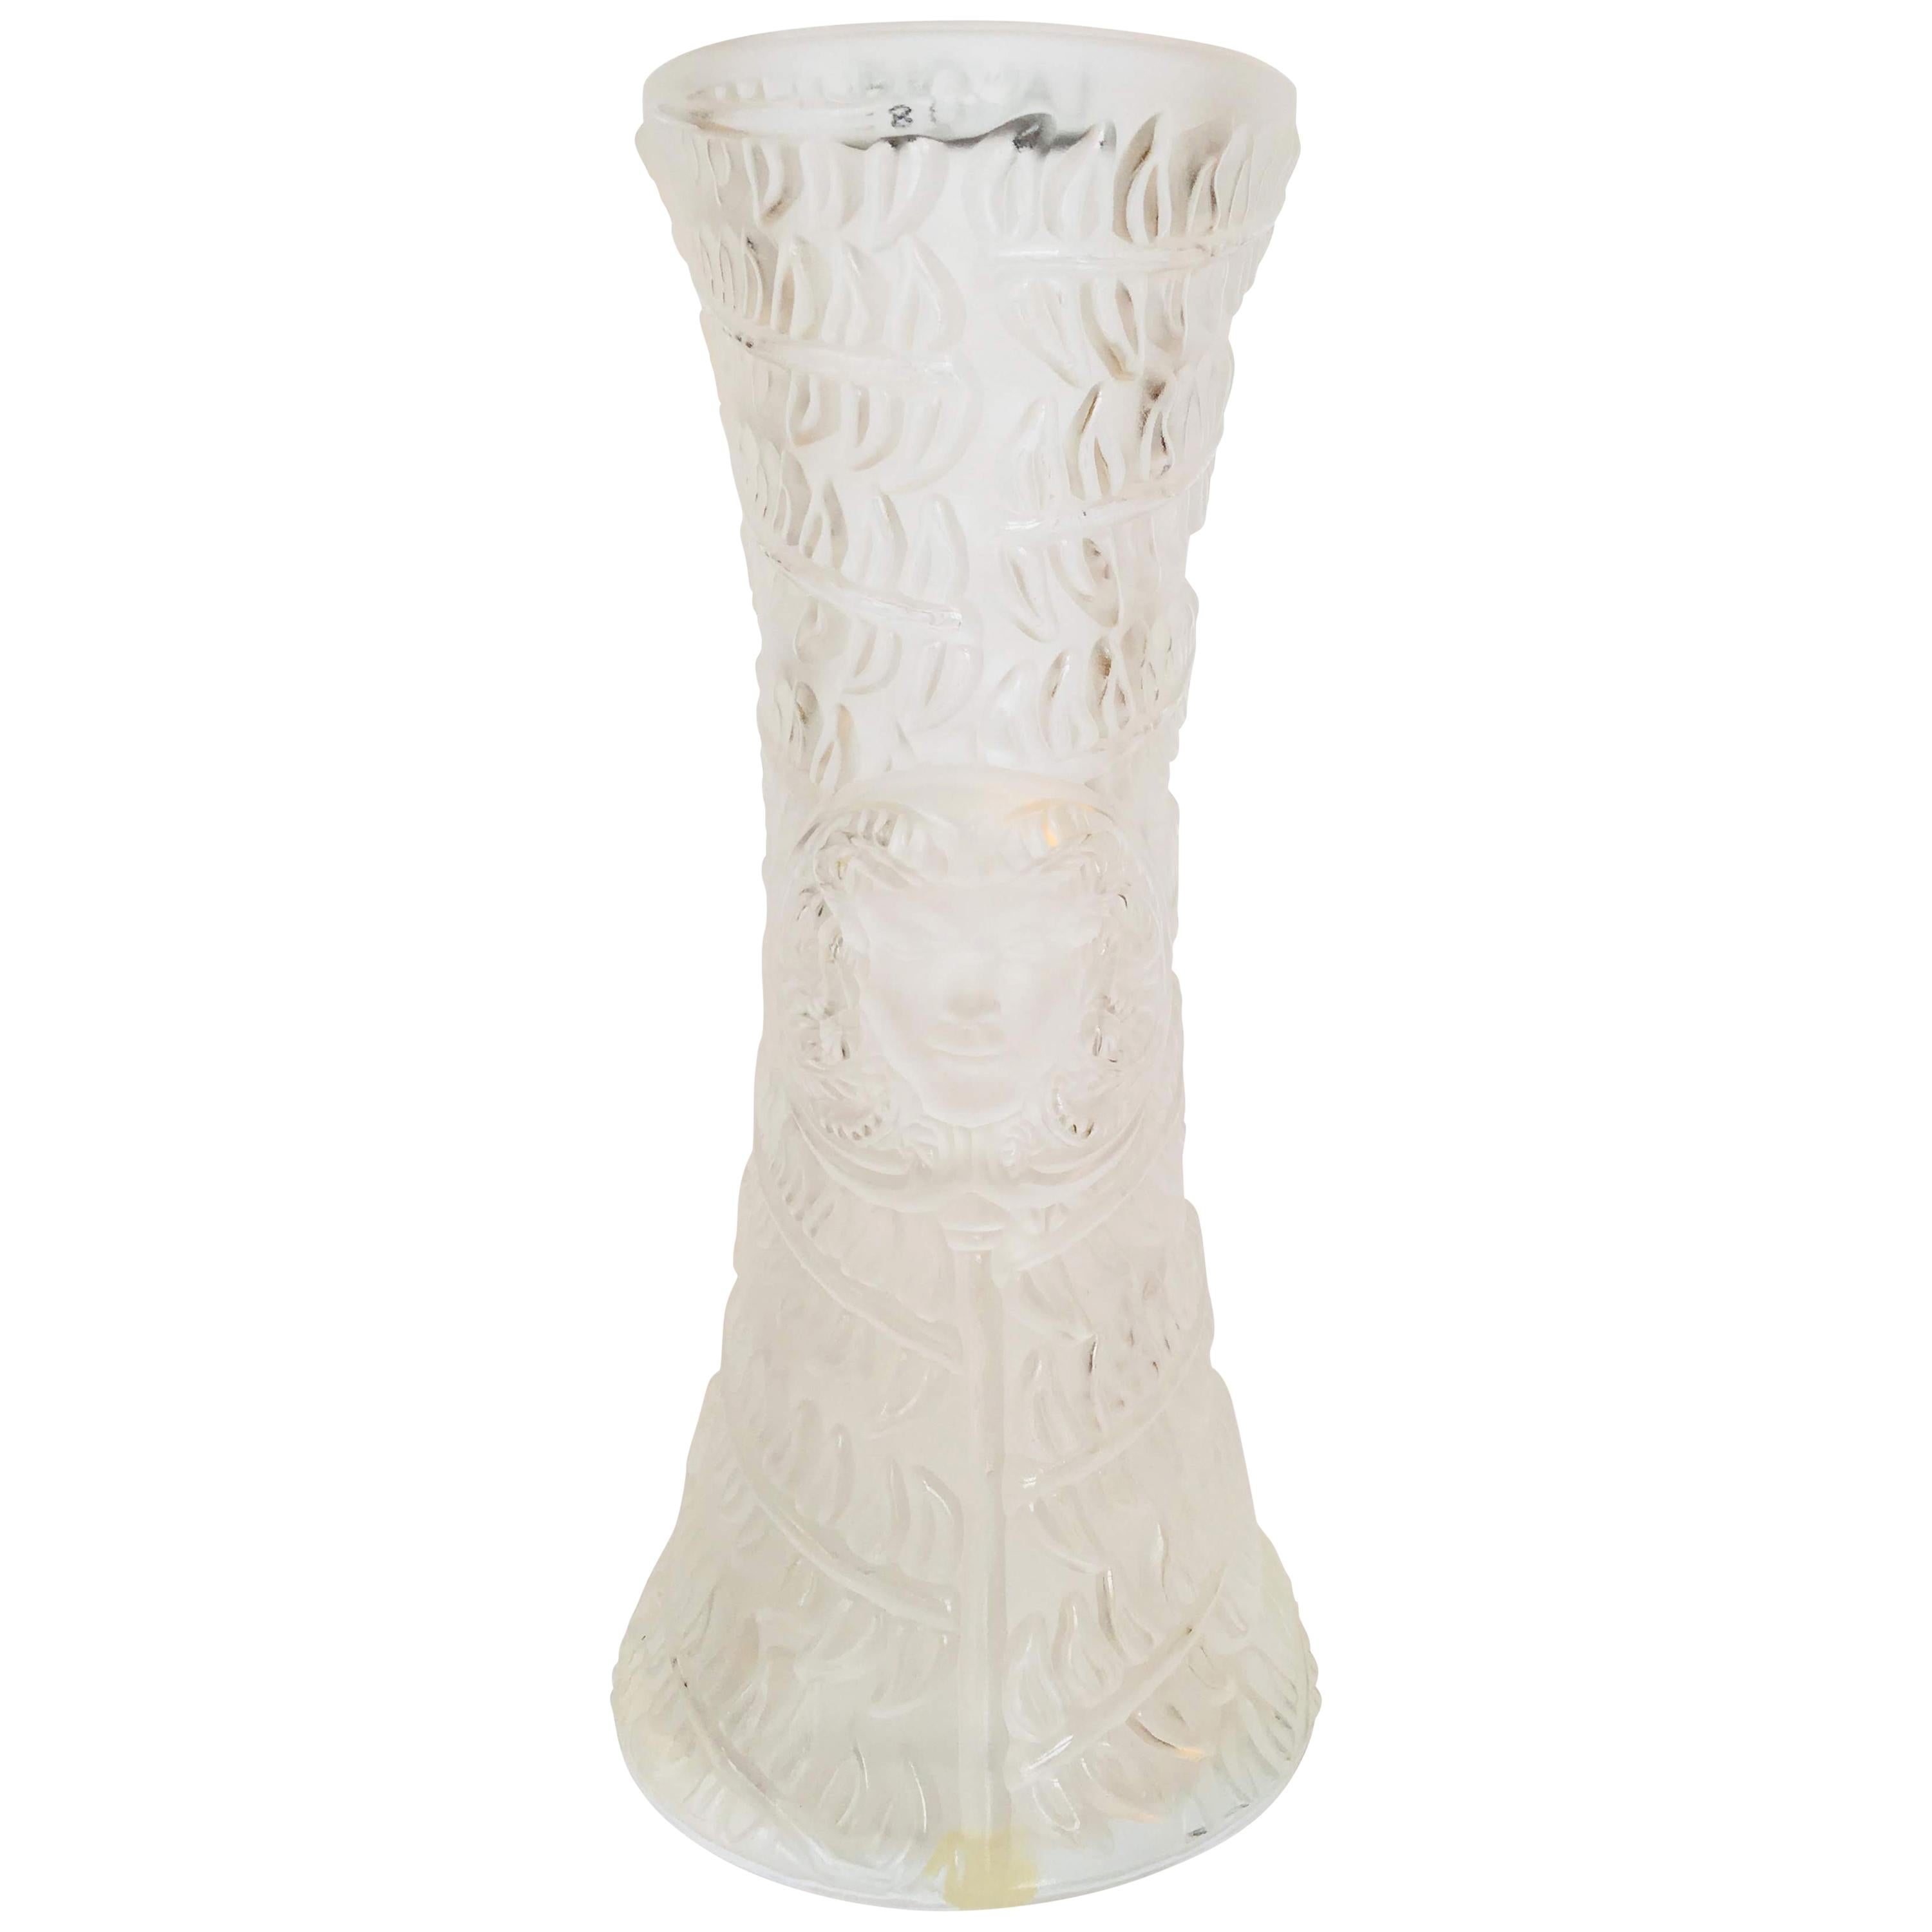 Lalique "Mask de Femme" Vase